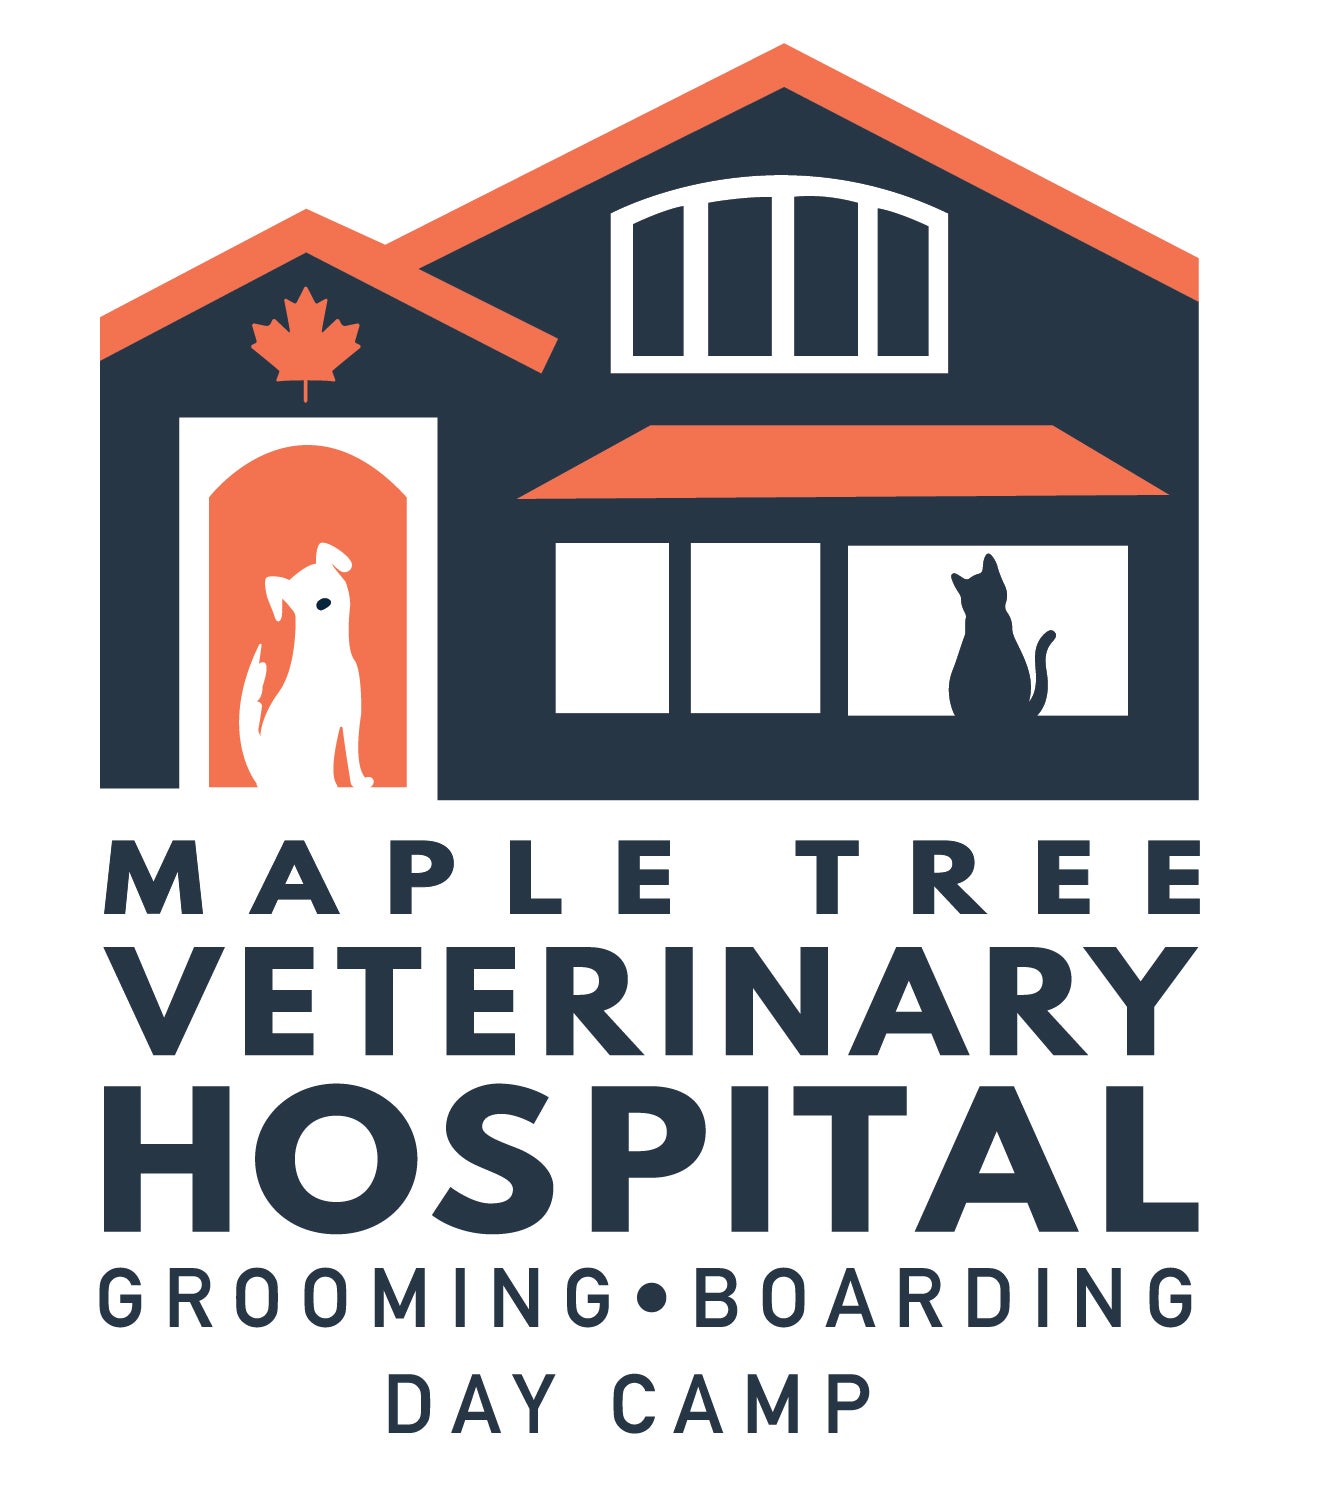 Maple Tree Veterinary Hospital & Dog Camp logo